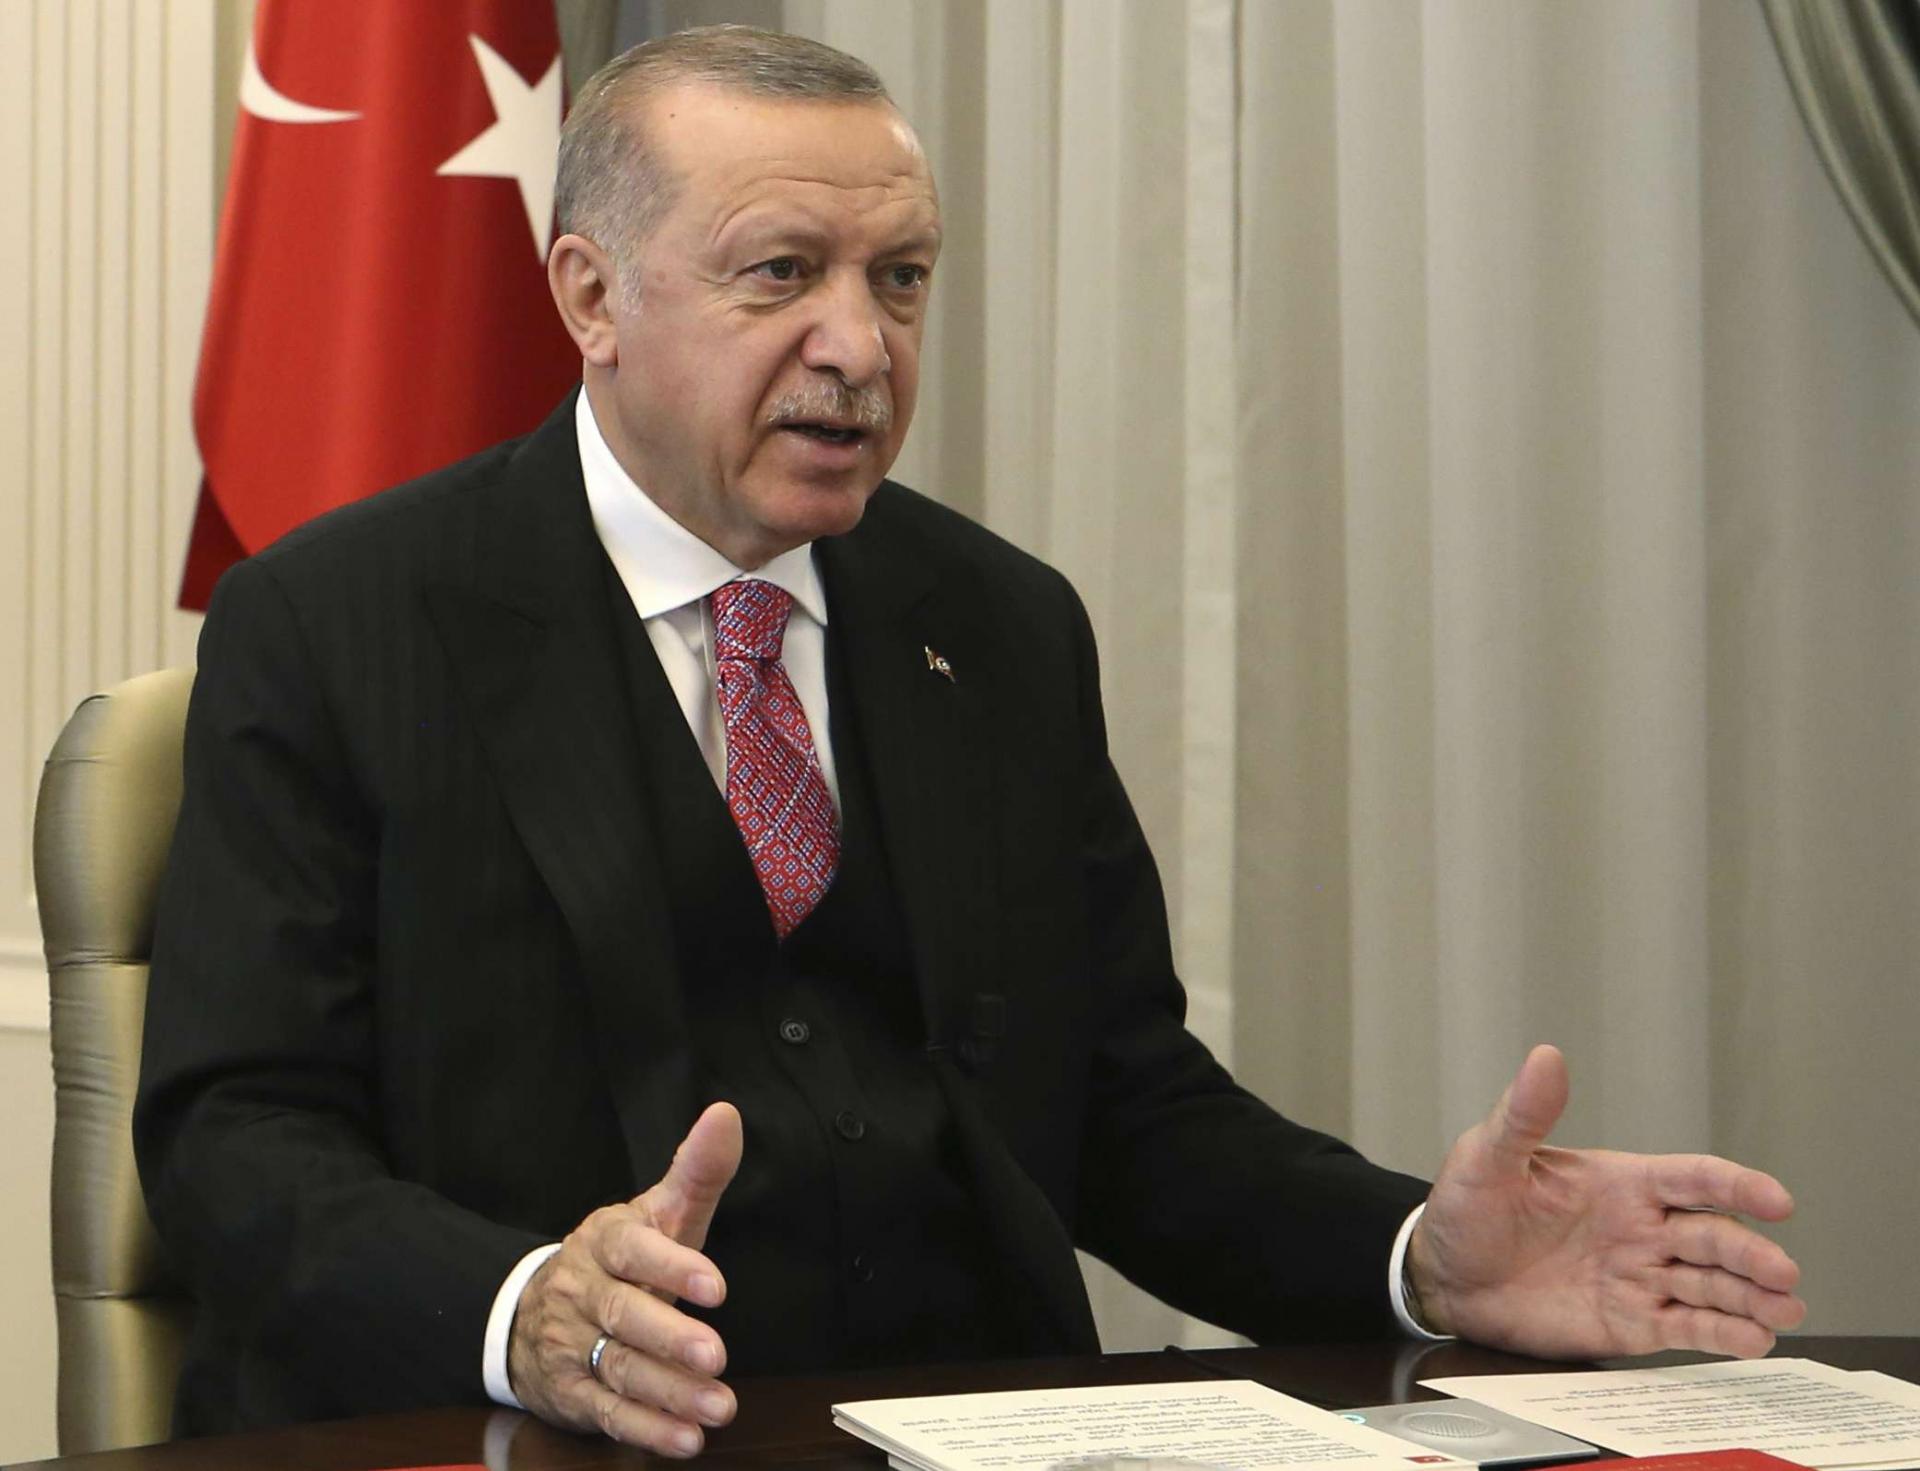 حادثة مدانة ومعزولة في الملاعب الاوروبية يحاول اردوغان استغلالها سياسيا